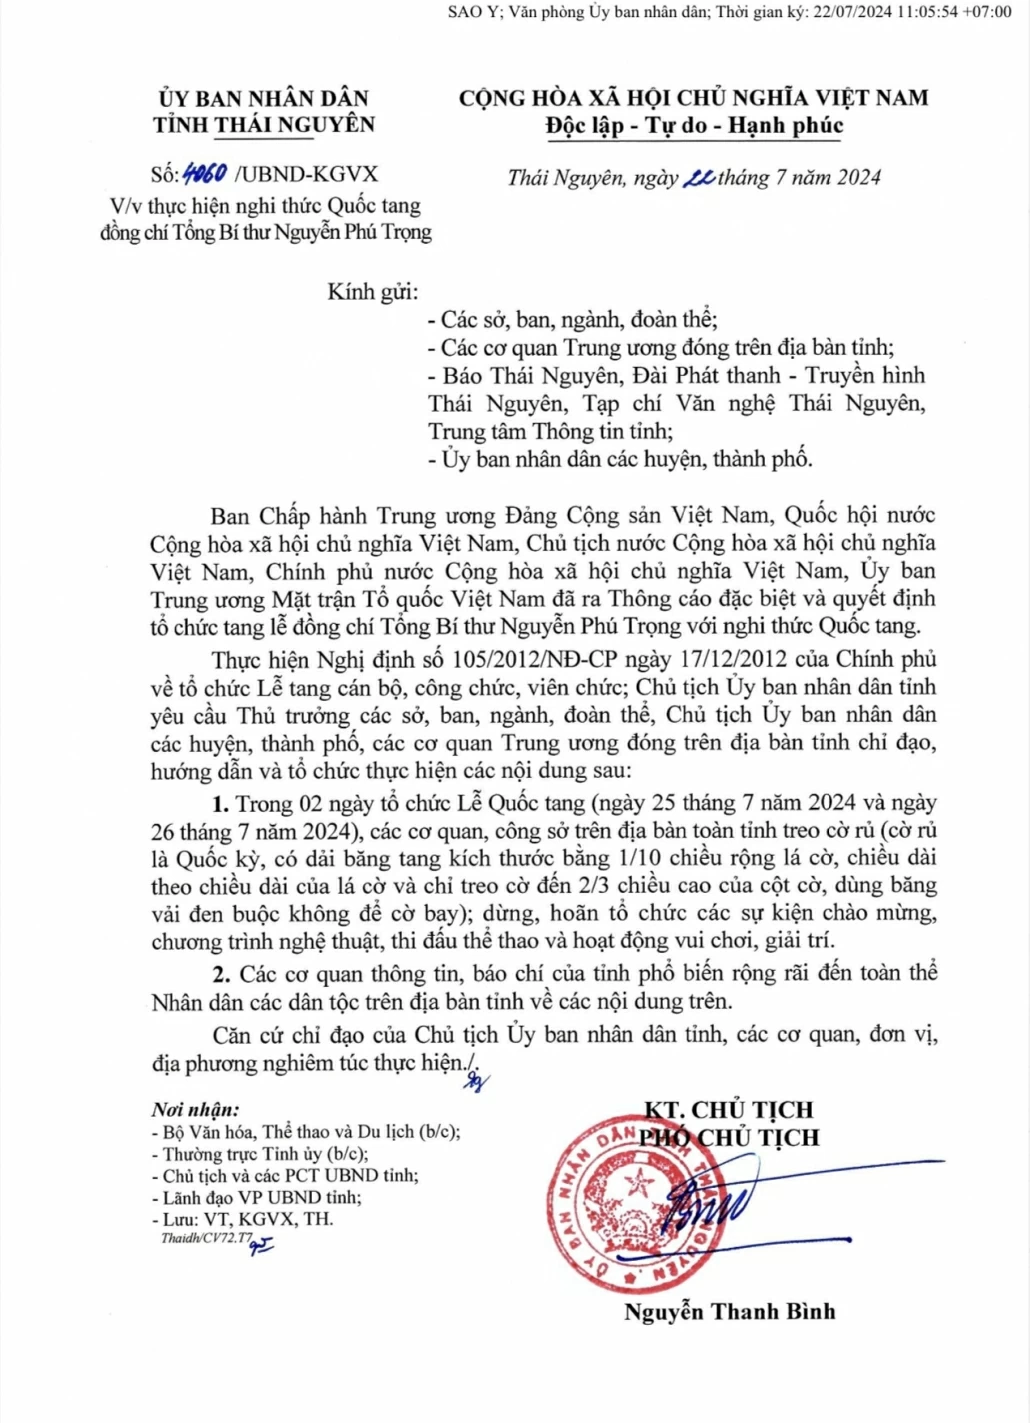 Những dấu ấn về Đại đội 915, Đội 91 Bắc Thái